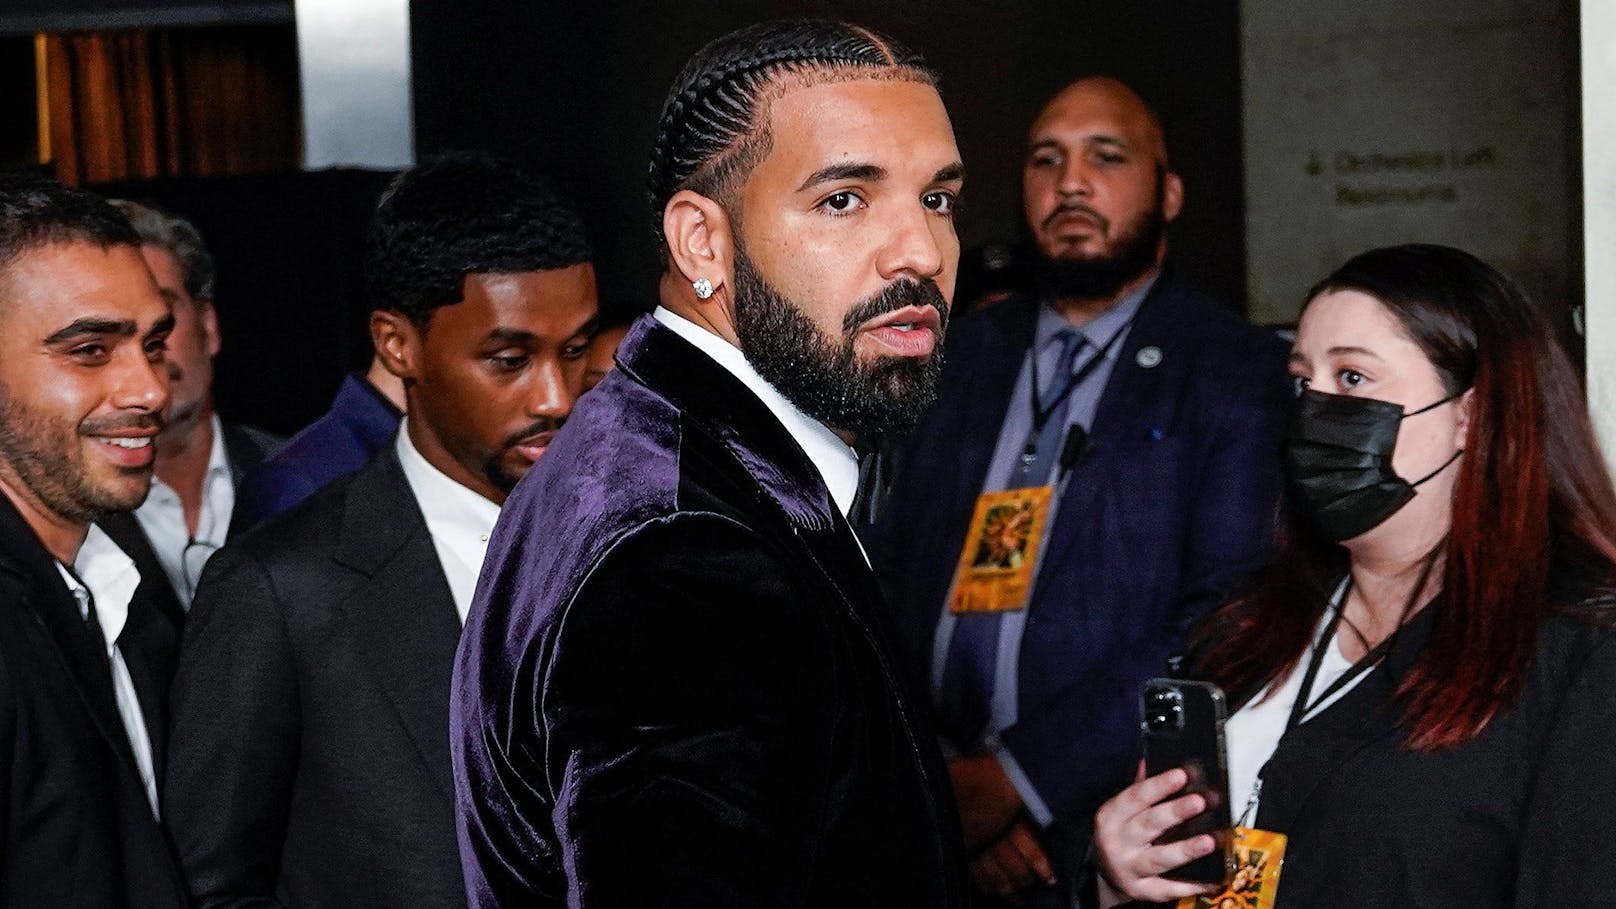 Darum drehen Albaner wegen Drakes neuem Video durch